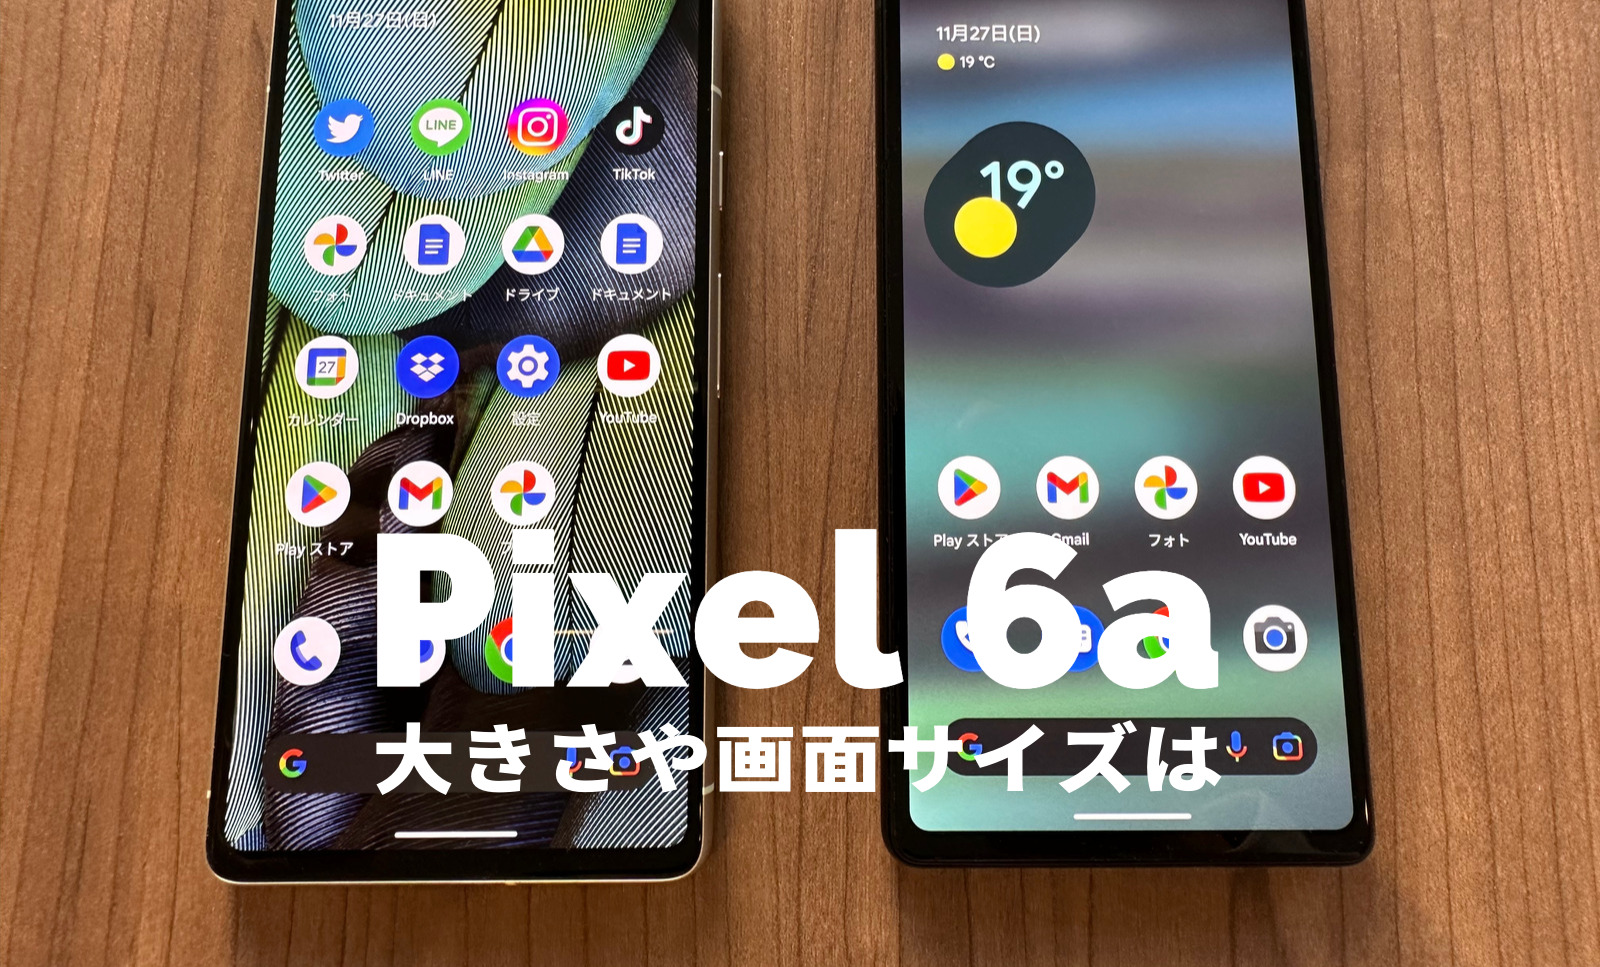 Google Pixel 6aの大きさや画面サイズは？【ピクセル6a】人気端末と比較して解説！のサムネイル画像